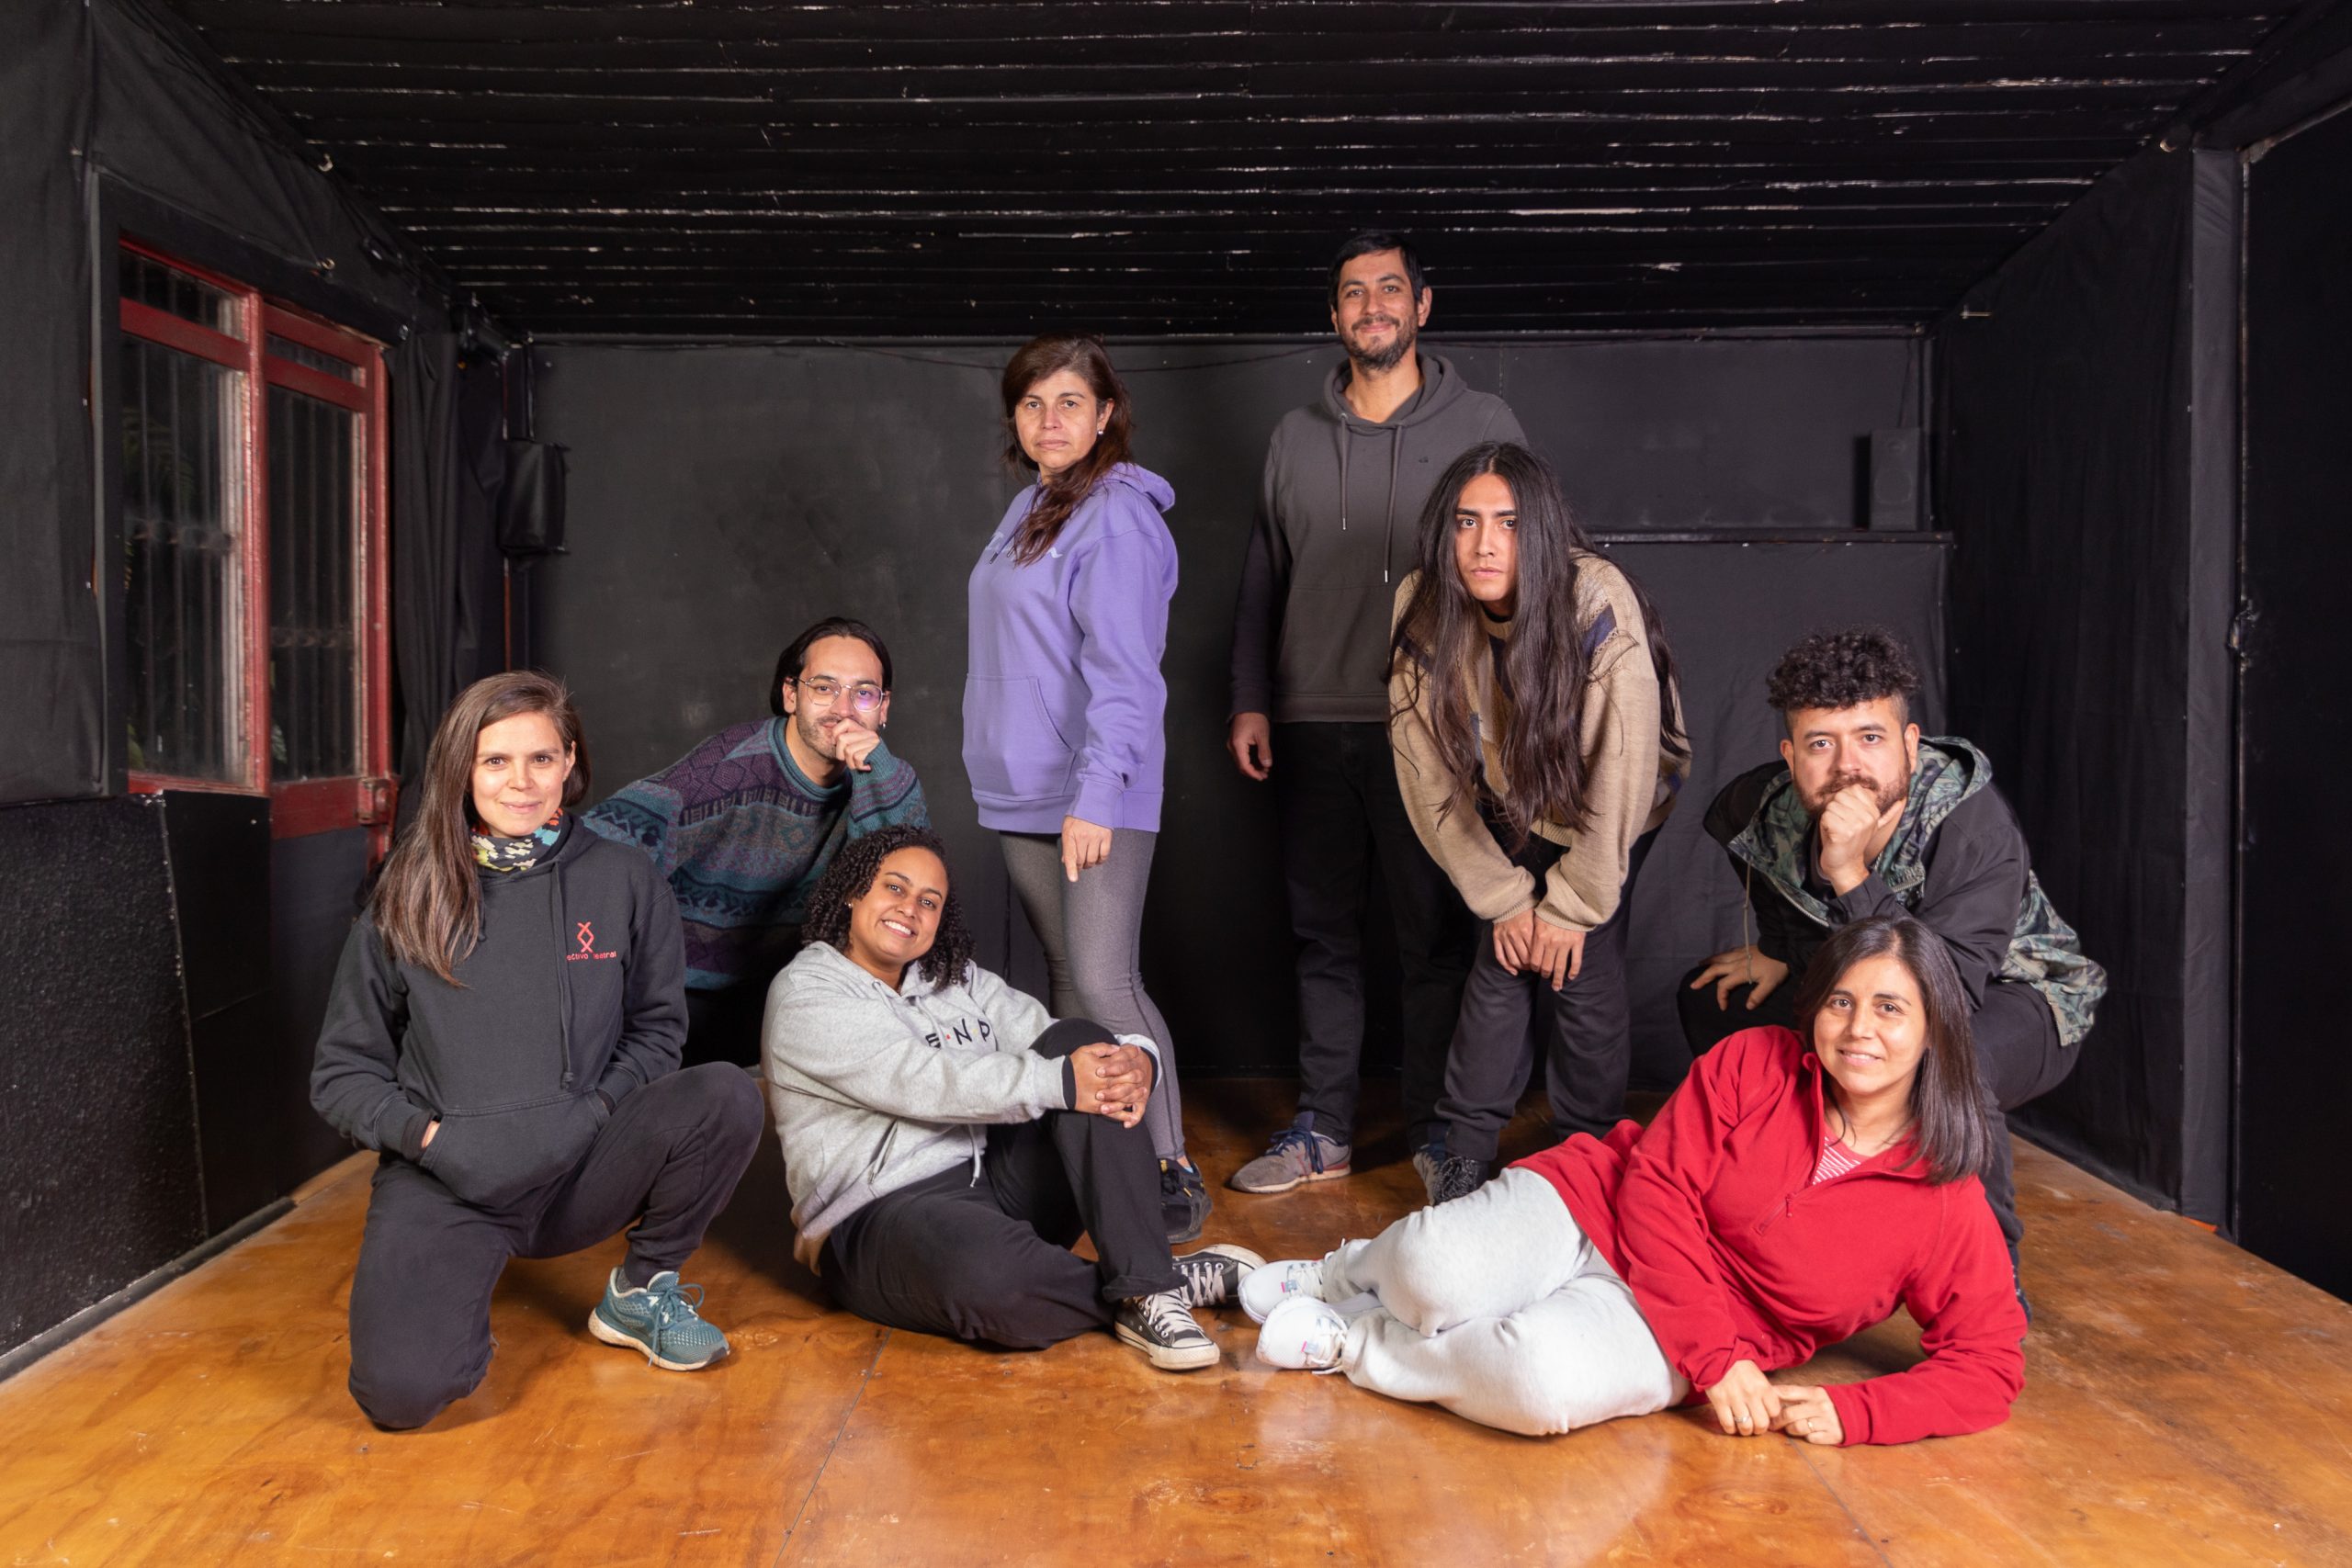  La Araucanía se viste de cultura: Con obras inéditas actores y actrices ciudadanas en preparan Temporadas Teatrales